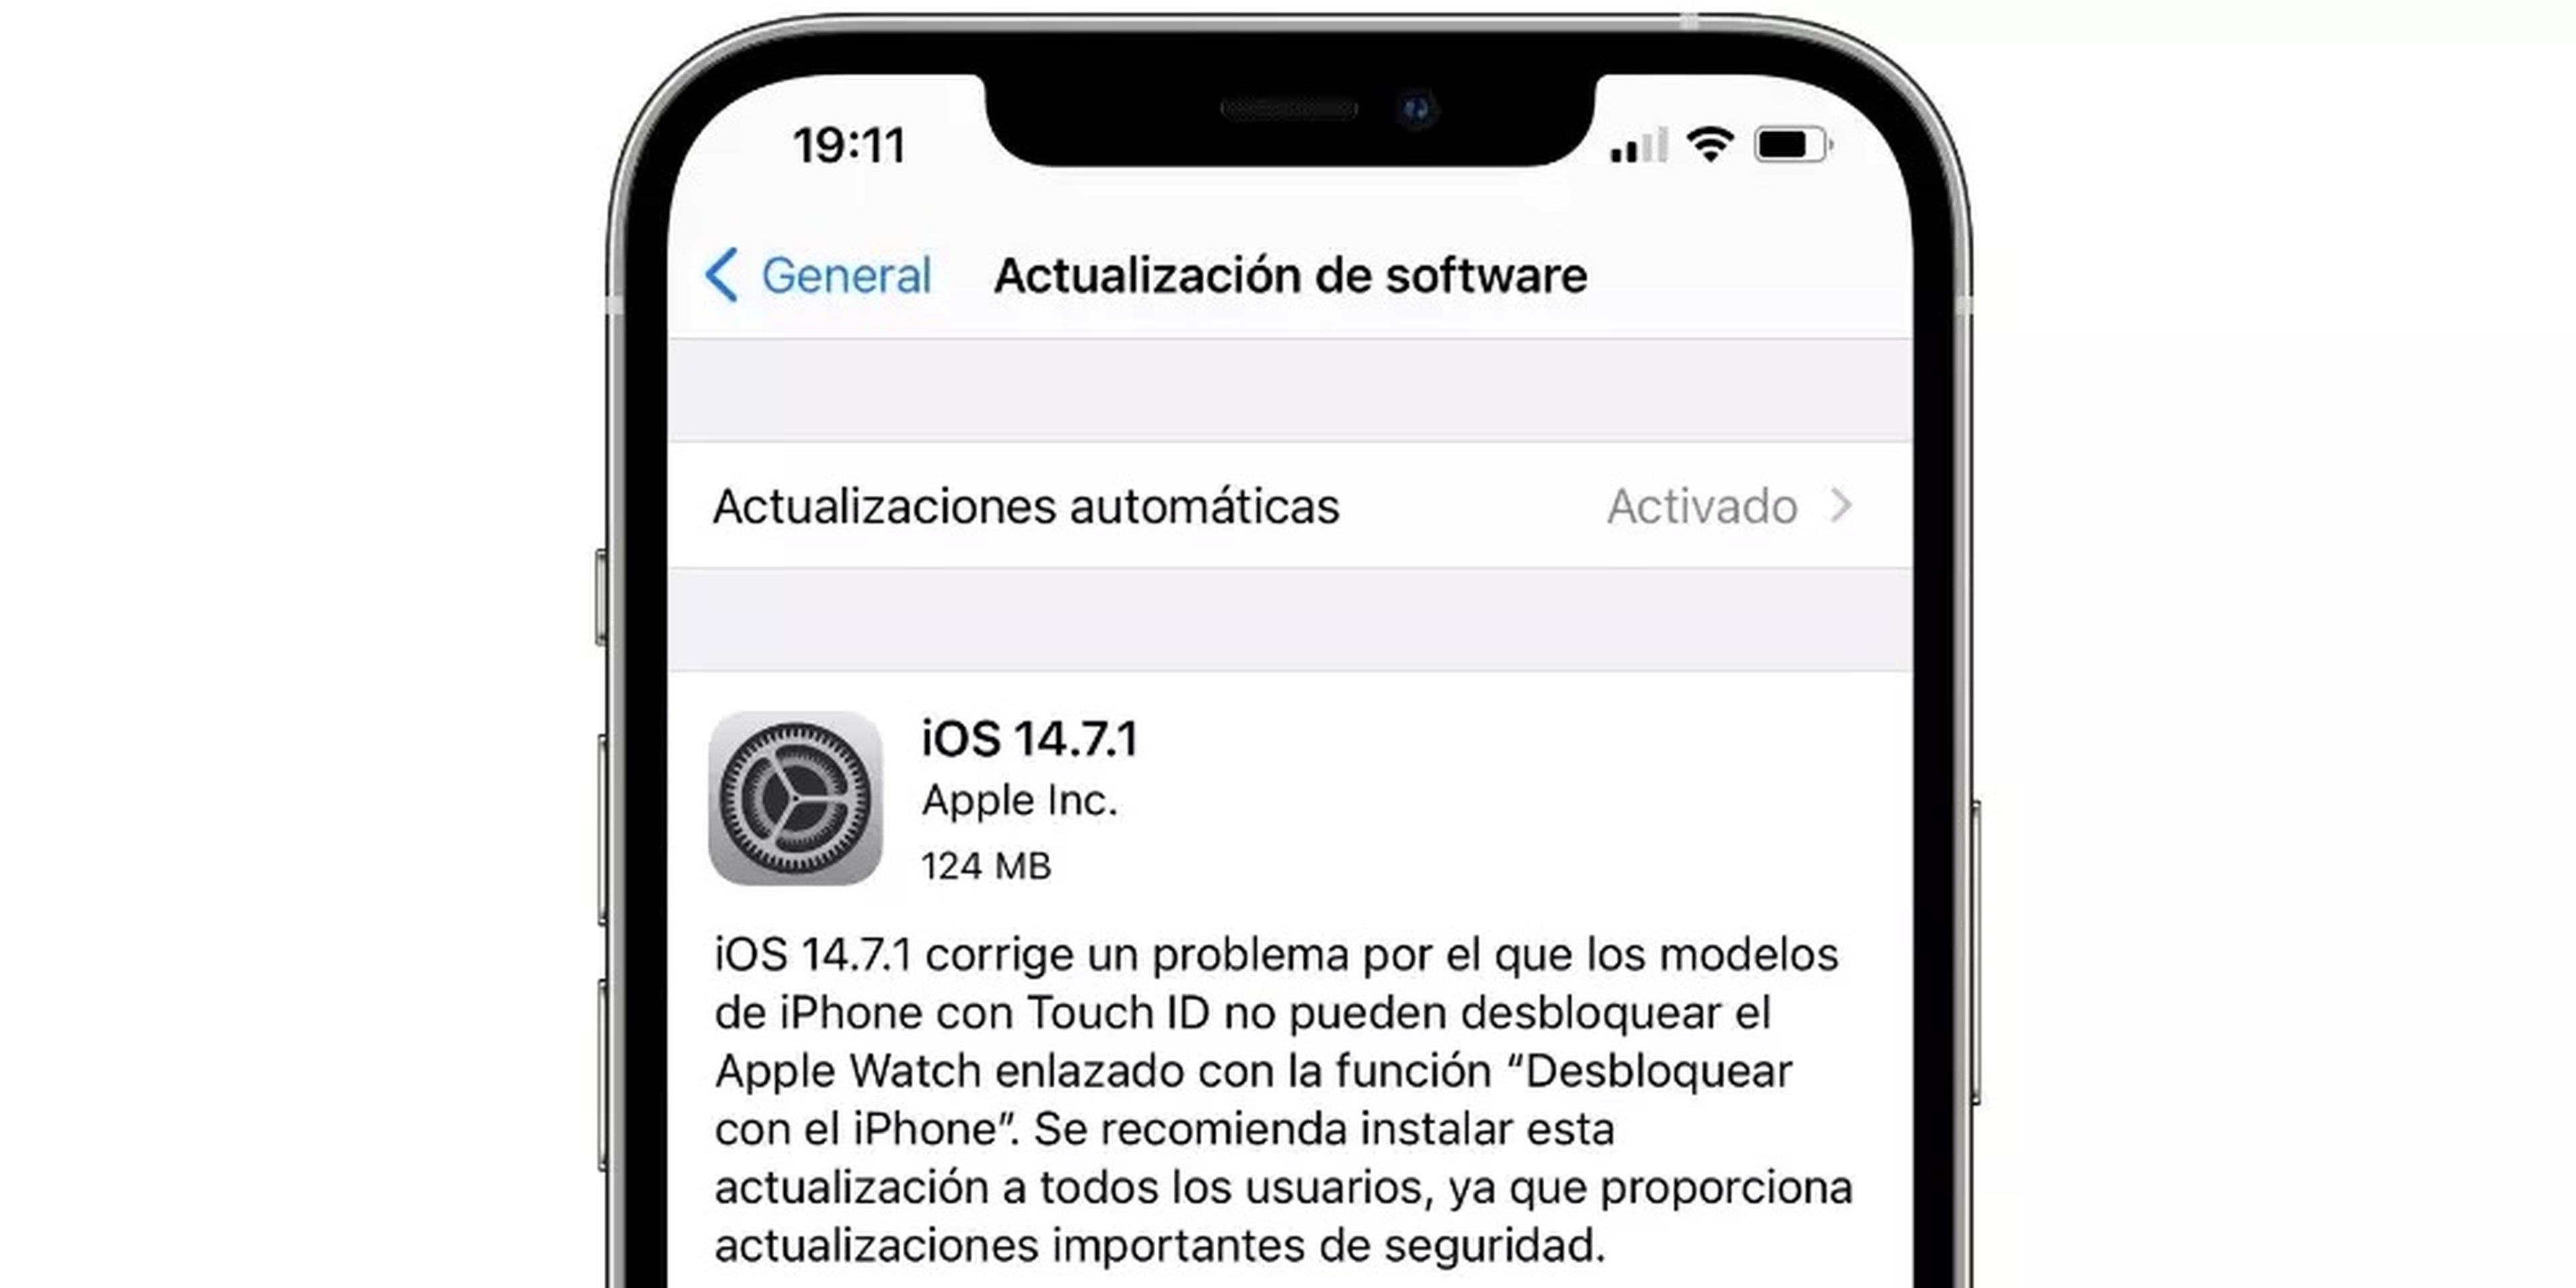 Motivos por los que actualizar iOS 14.7